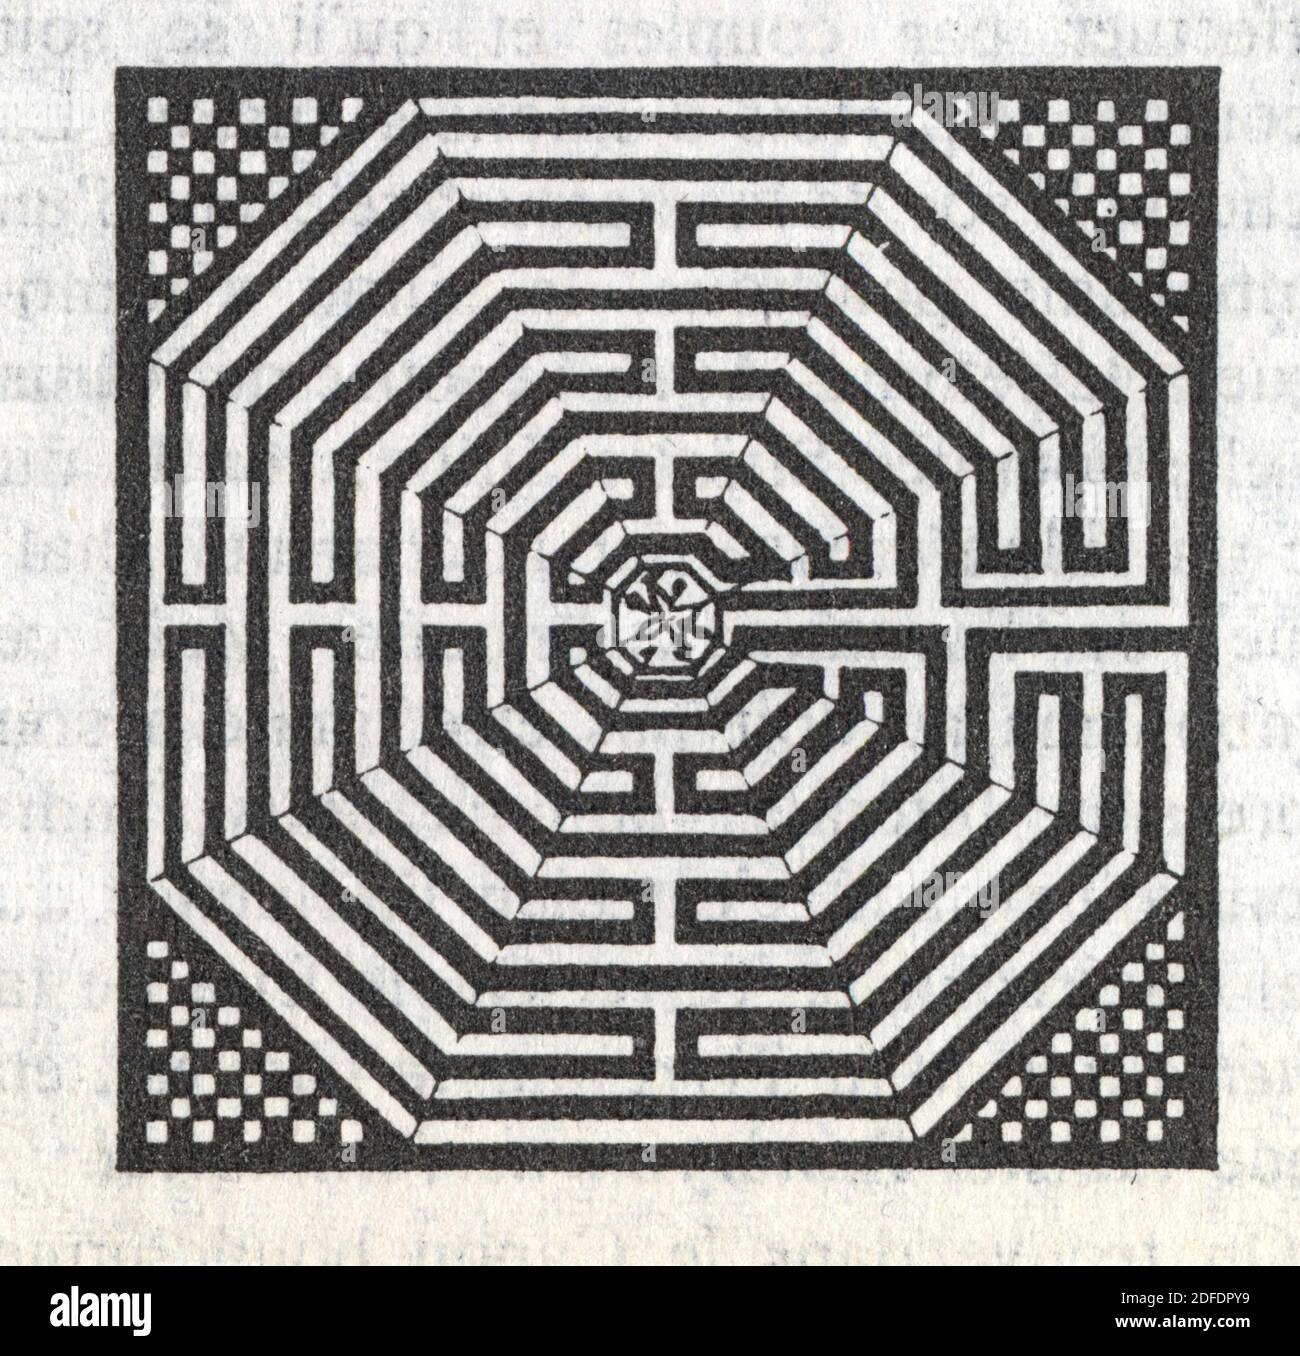 Labyrinthe. Grand labyrinthe de la nef centrale. Pierres blanches et bleu foncé. Cathédrale d'Amiens Stock Photo